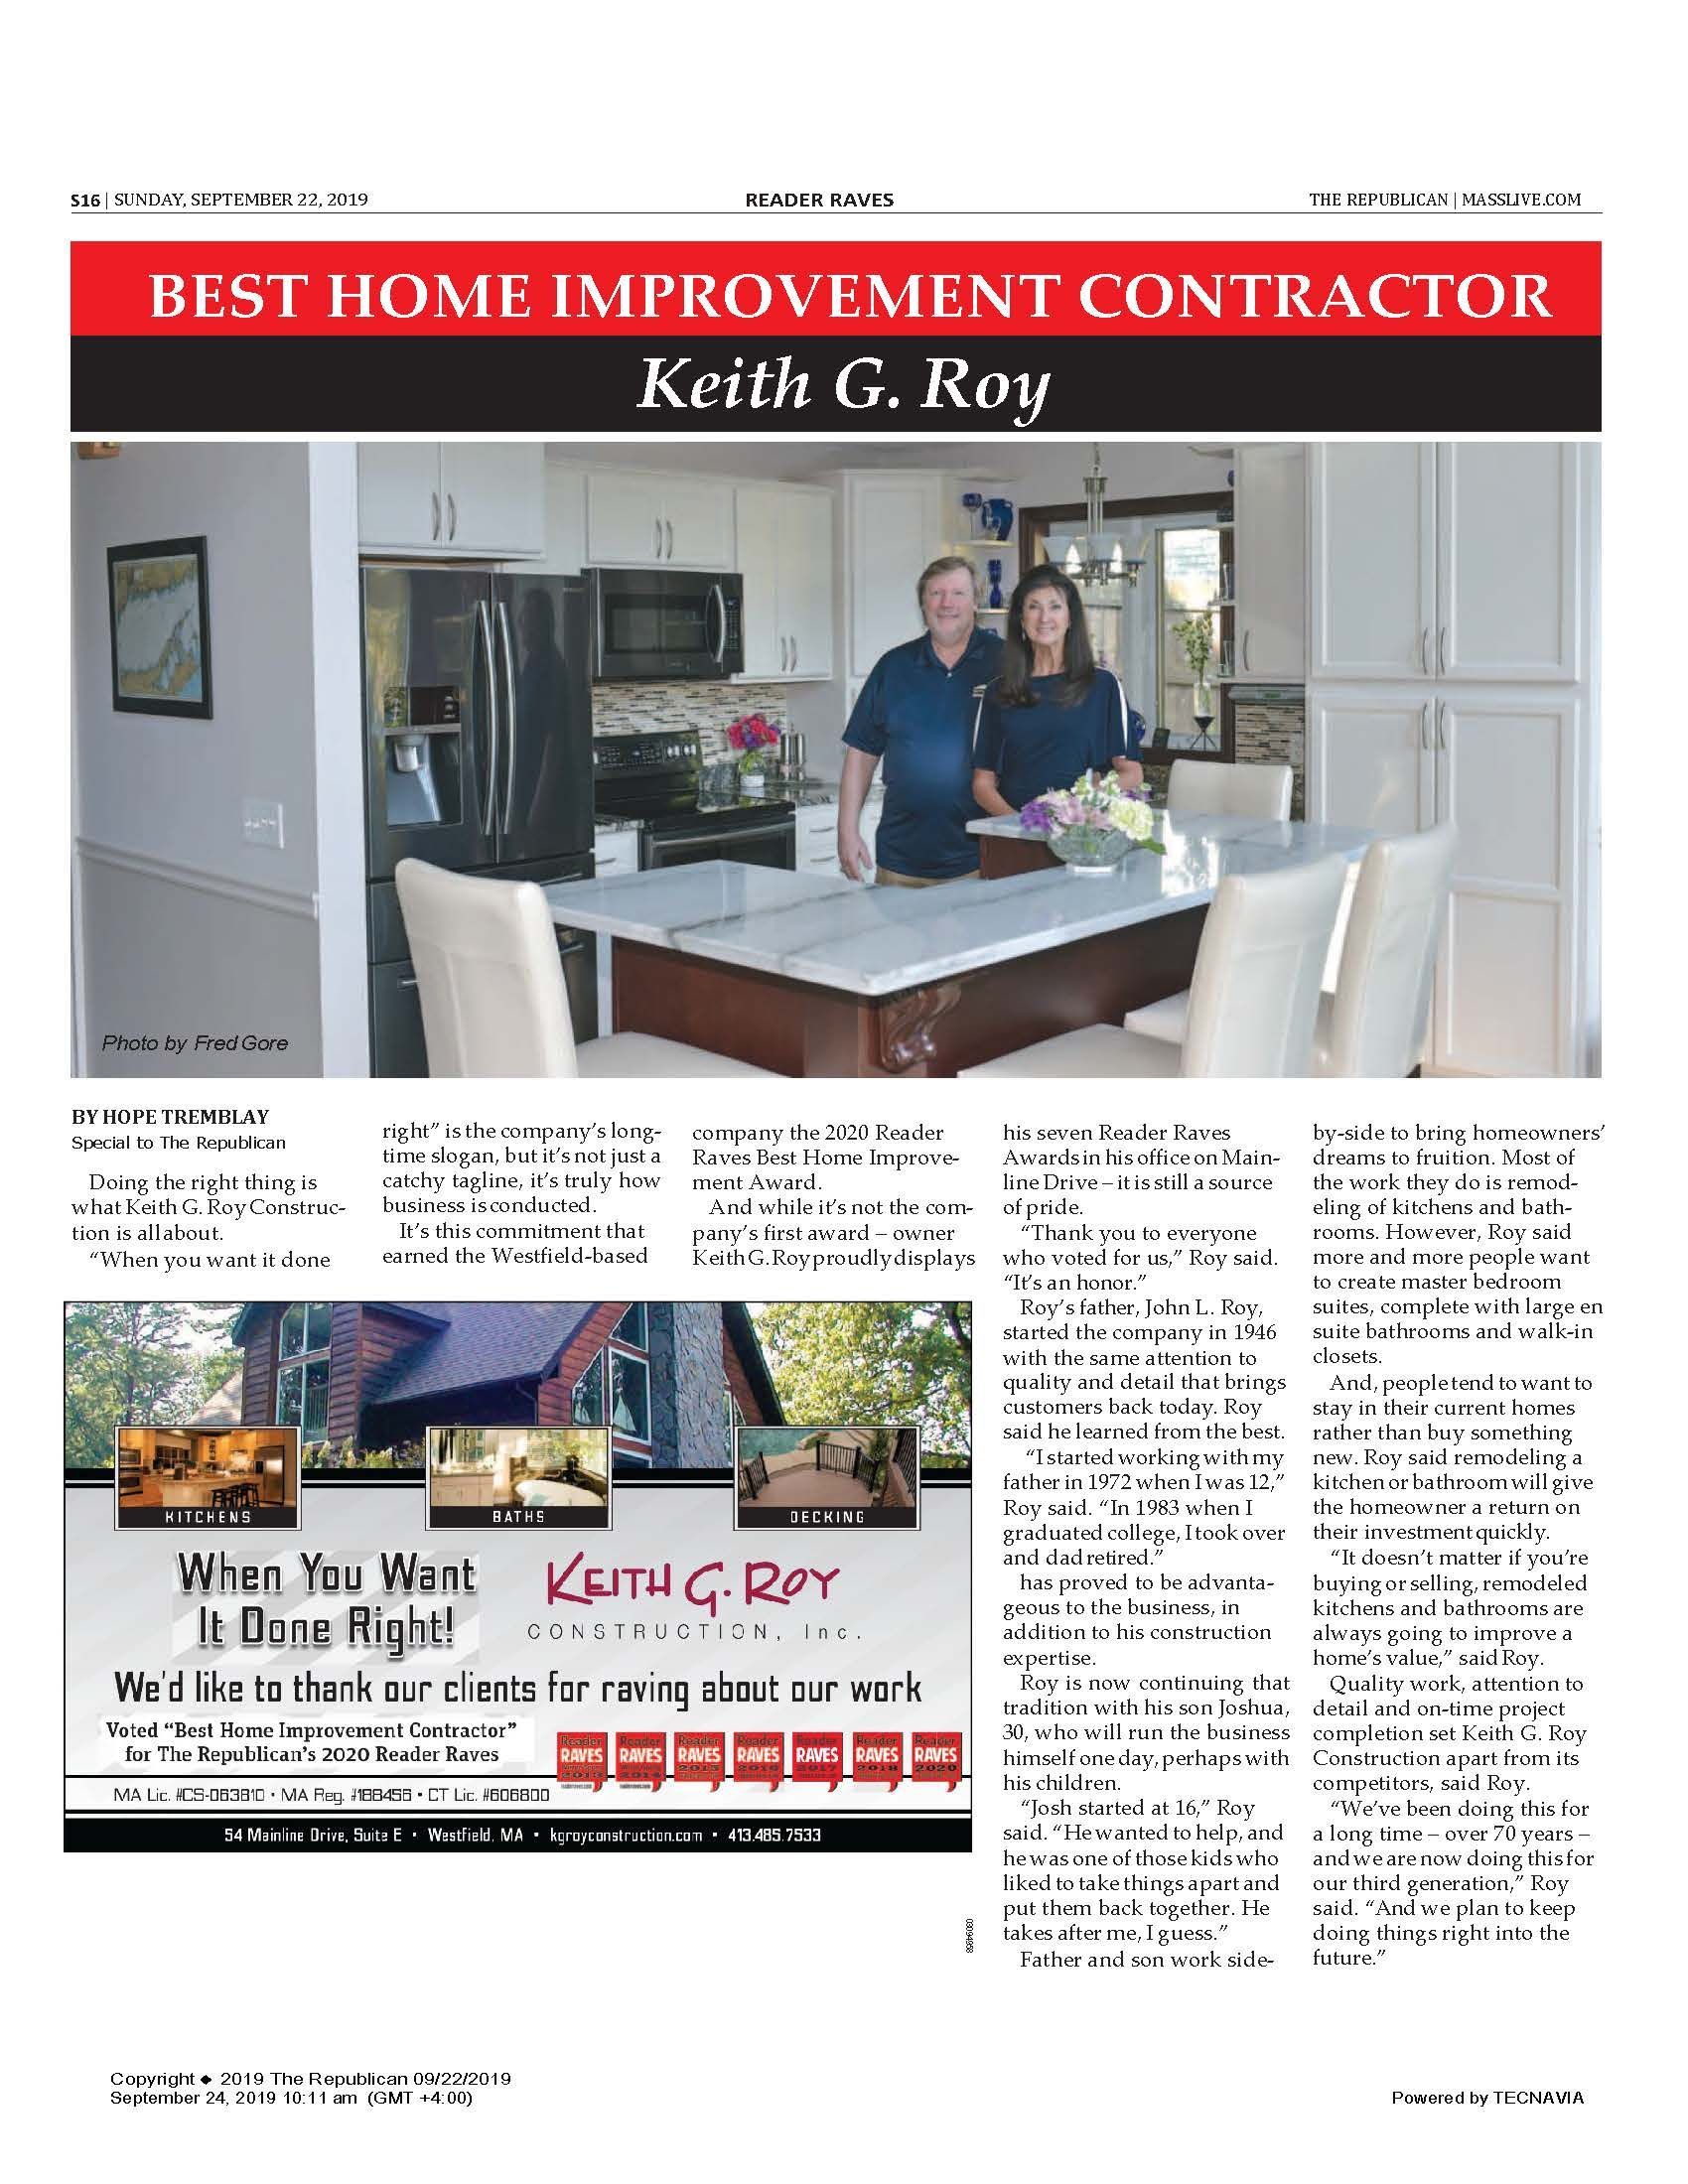 Best Home Improvement Contractor